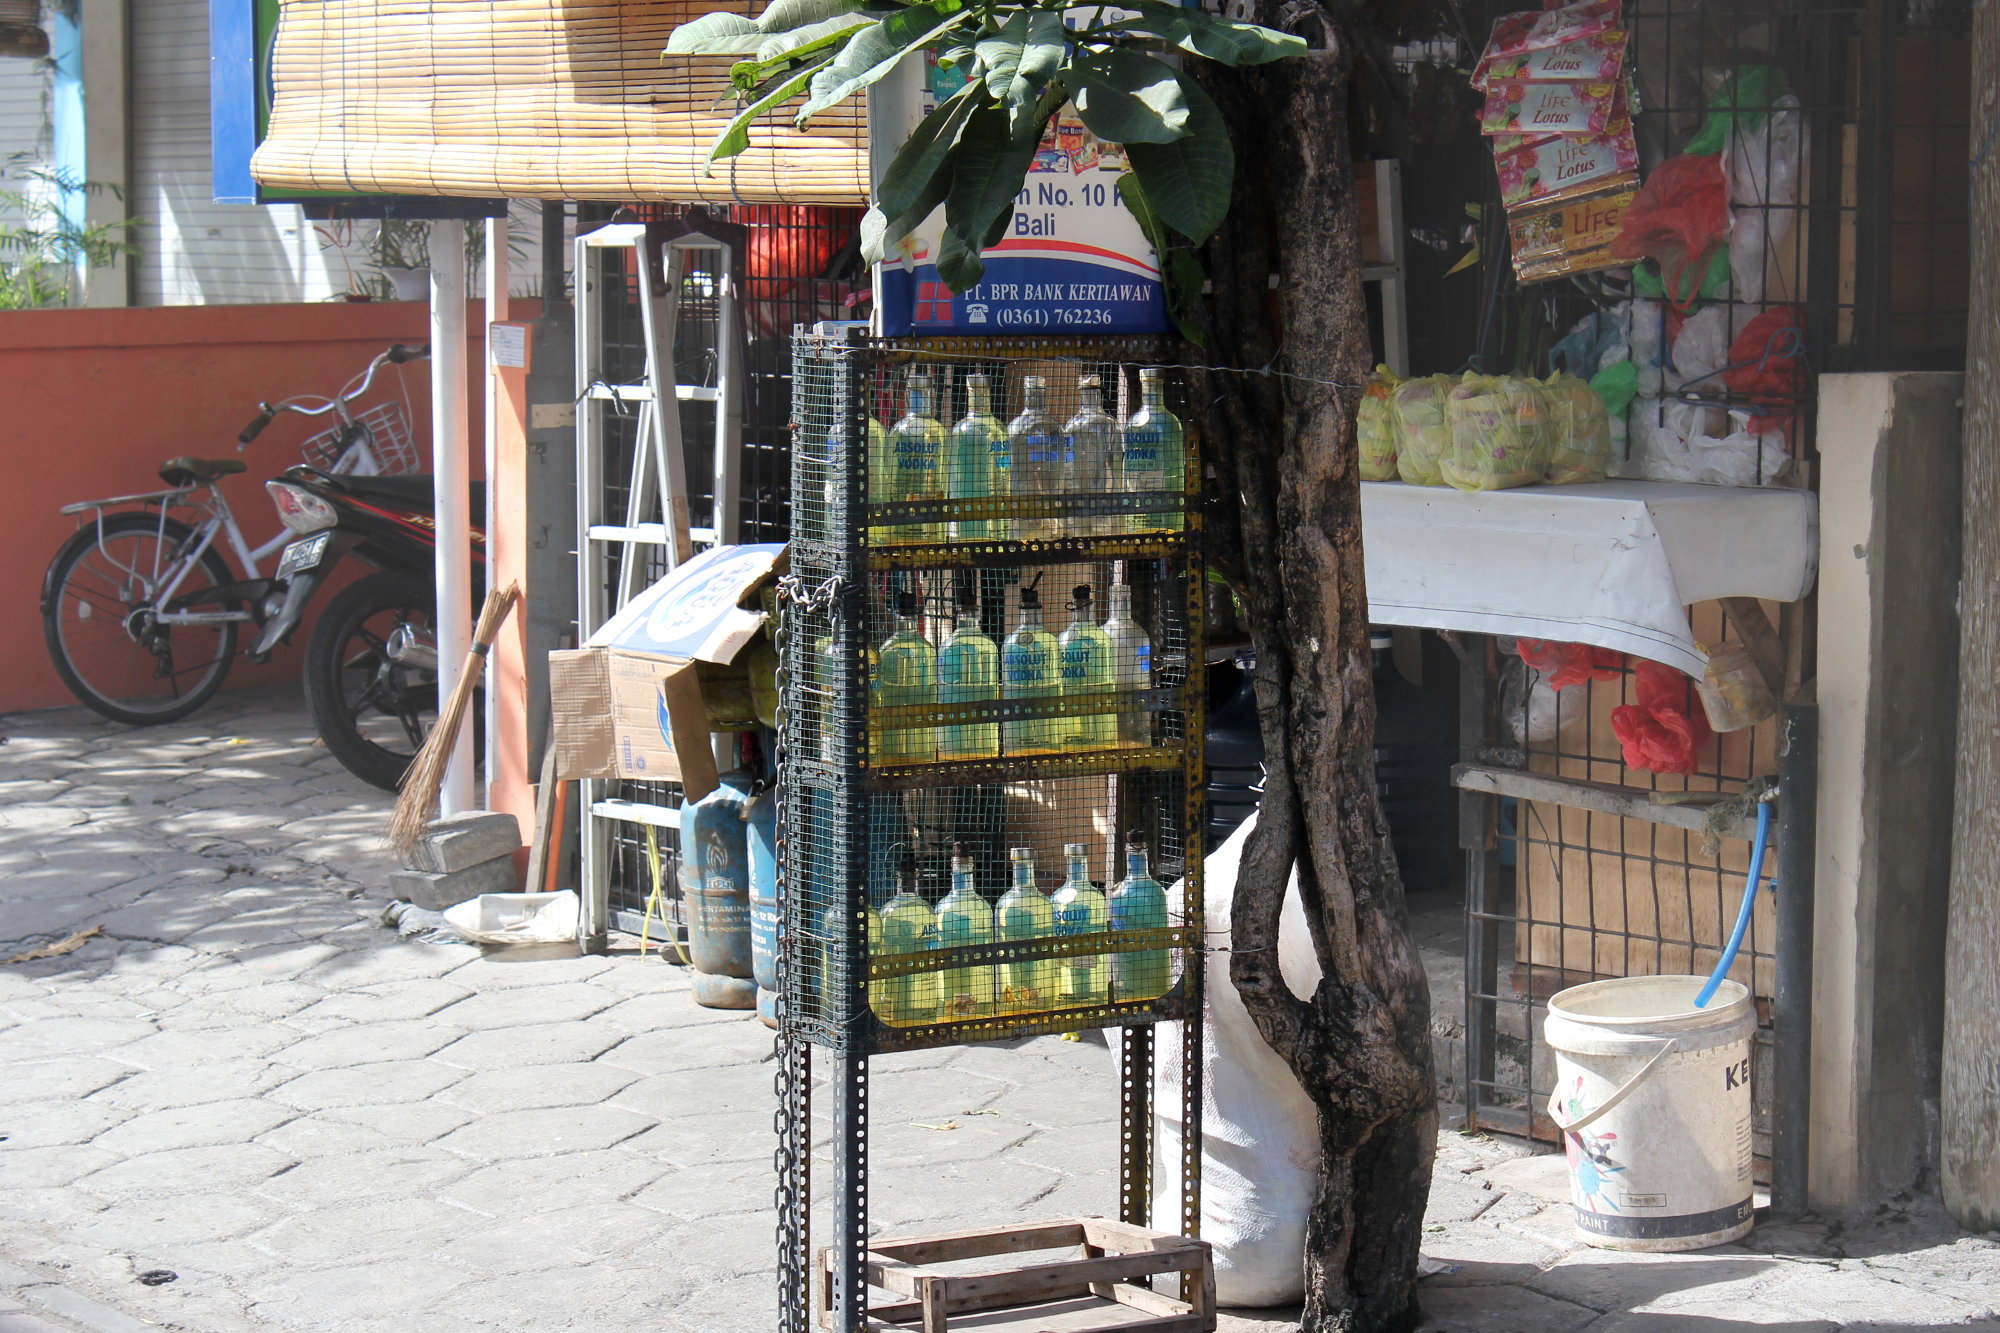 Outre dans les stations service, l'essence est vendue au litre par des commerçants de rue qui la stockent dans des bouteilles de vodka Absolut.